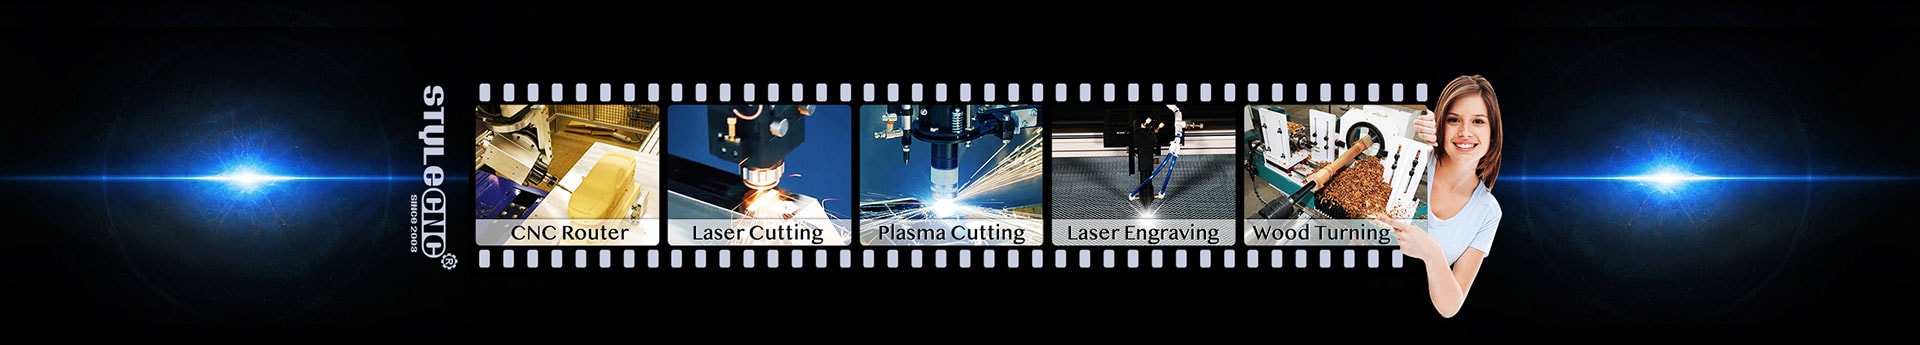 CNC Laser Machine Videos